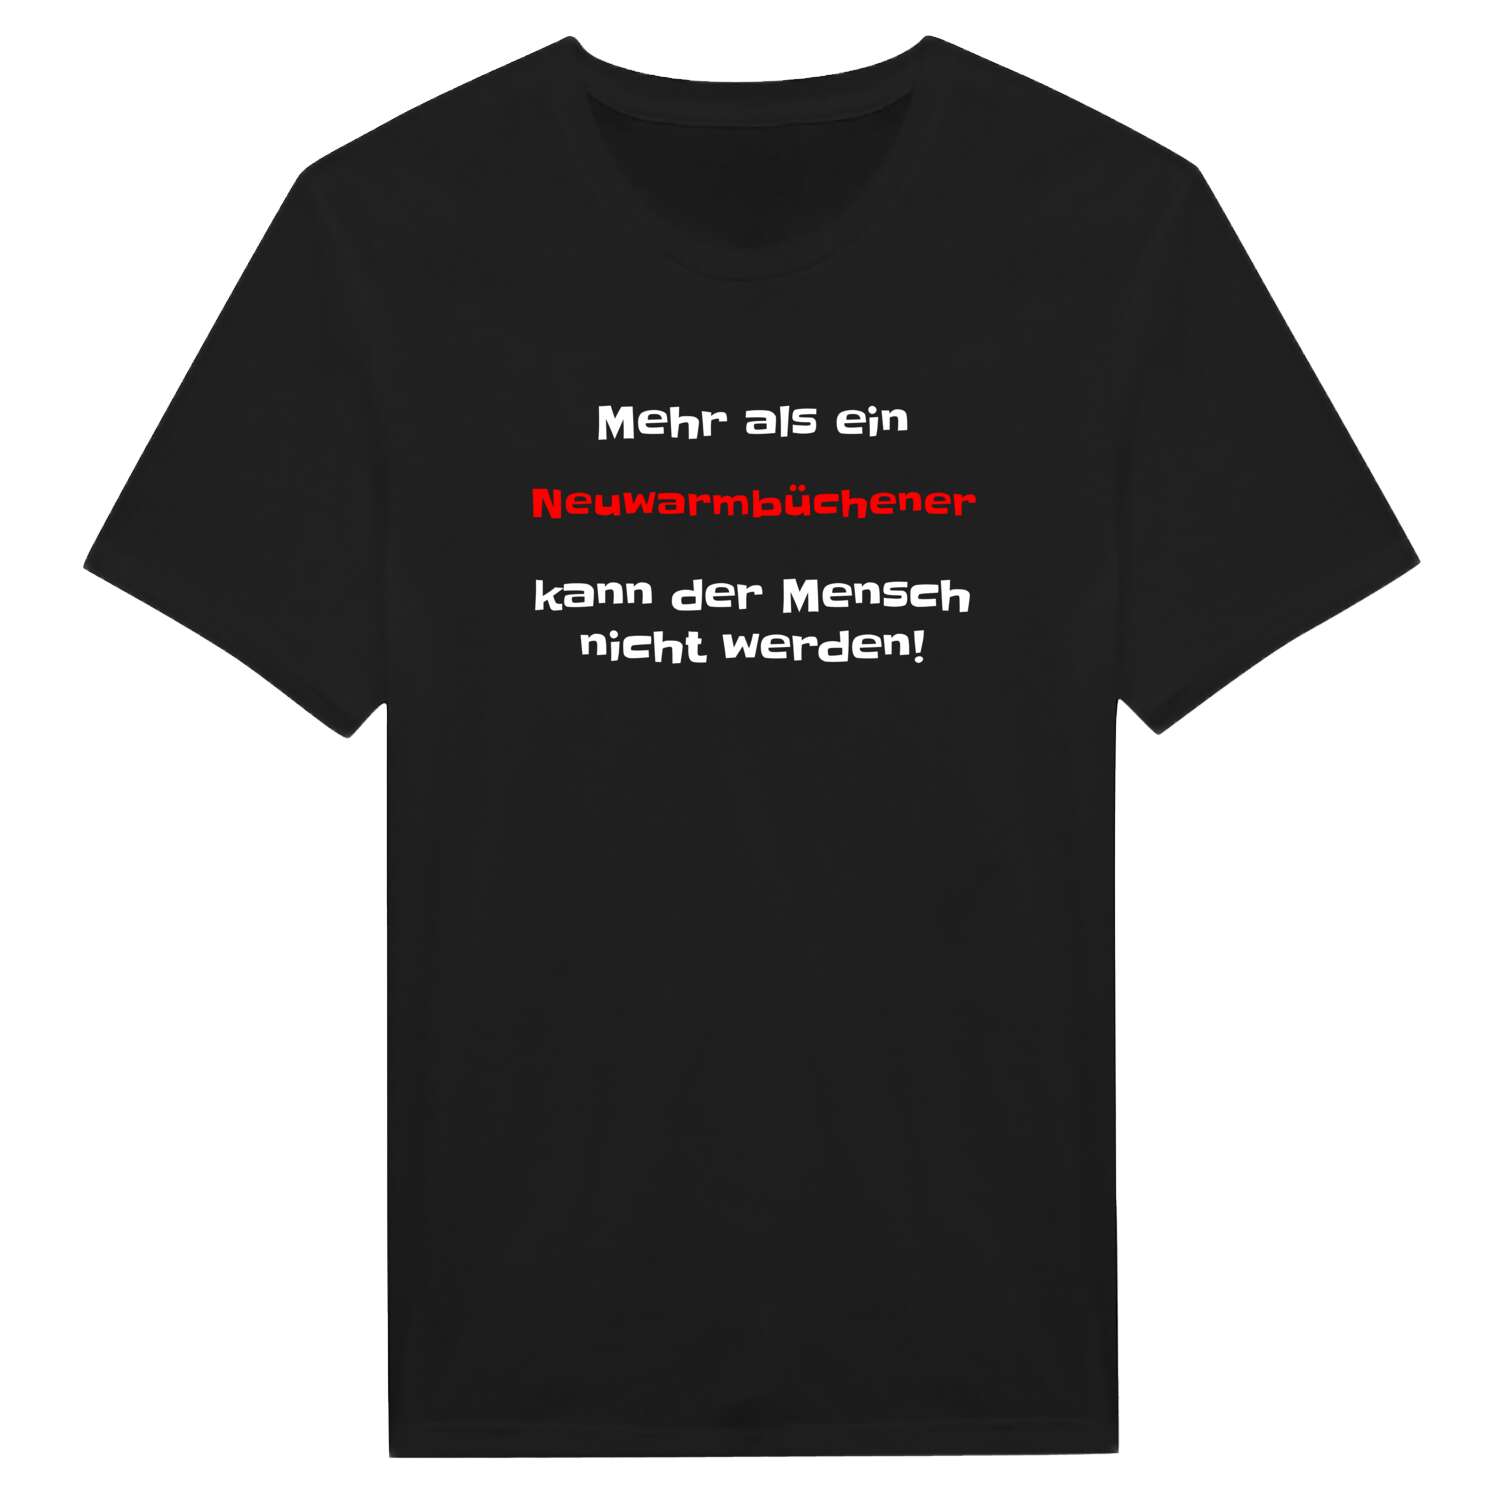 Neuwarmbüchen T-Shirt »Mehr als ein«